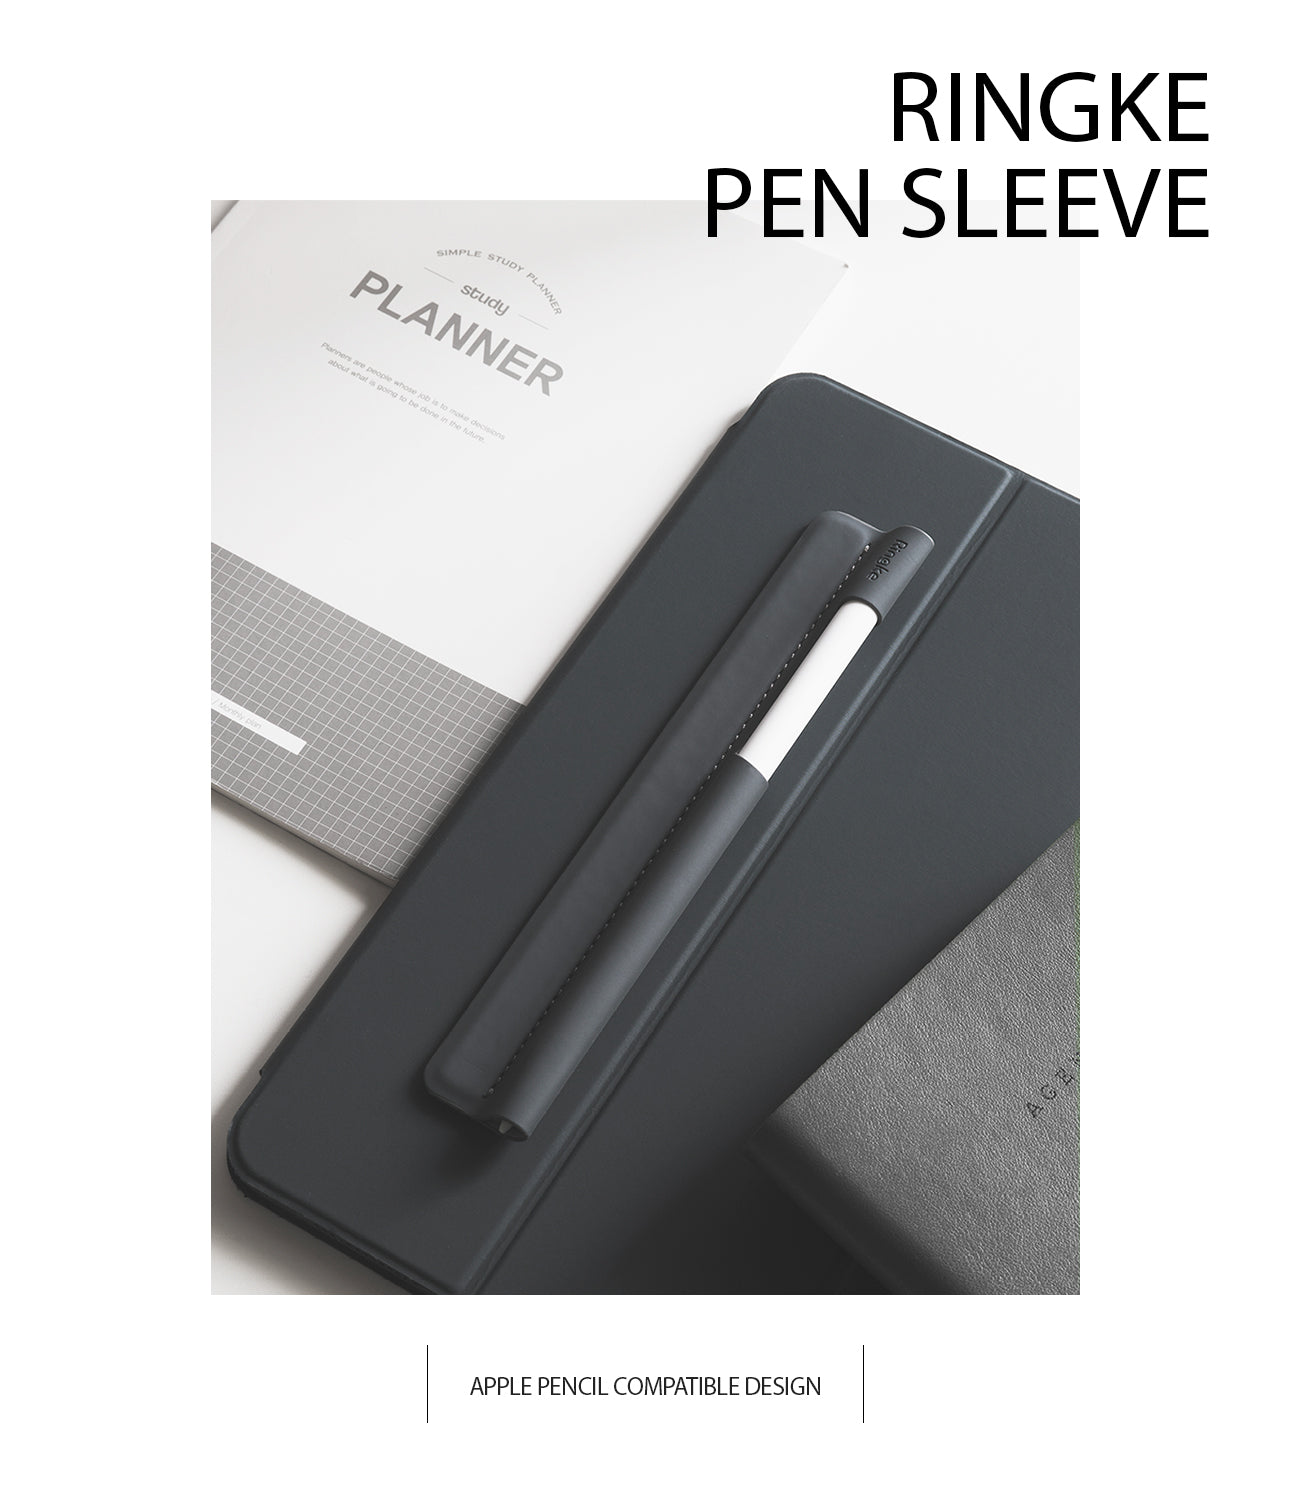 Ringke Pen Sleeve Charcoal Gray